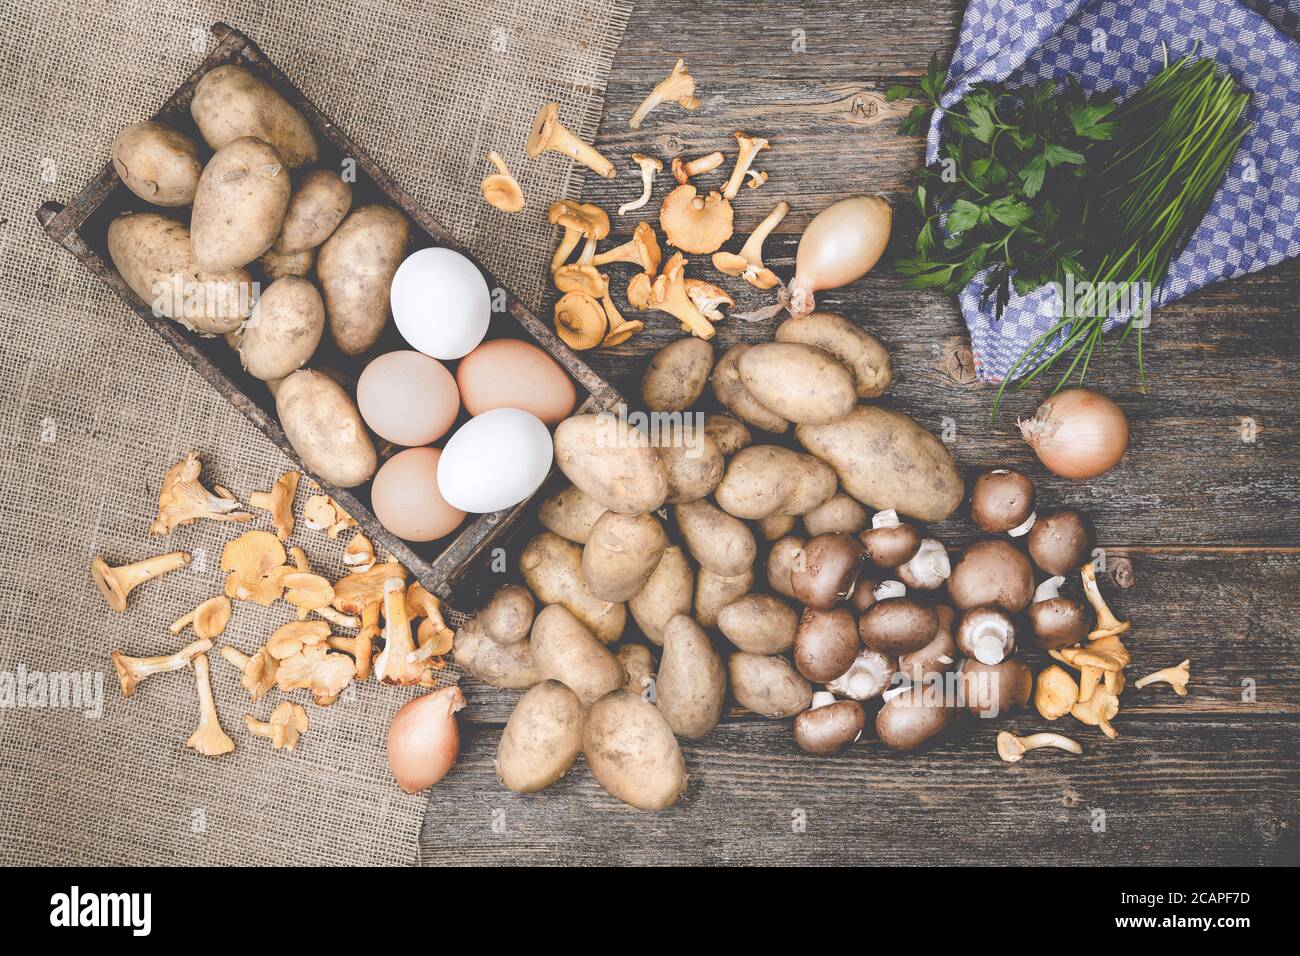 Patatas, champiñones, huevos, parslex, cebollino y cebollas en una mesa de modden con arpillera Foto de stock